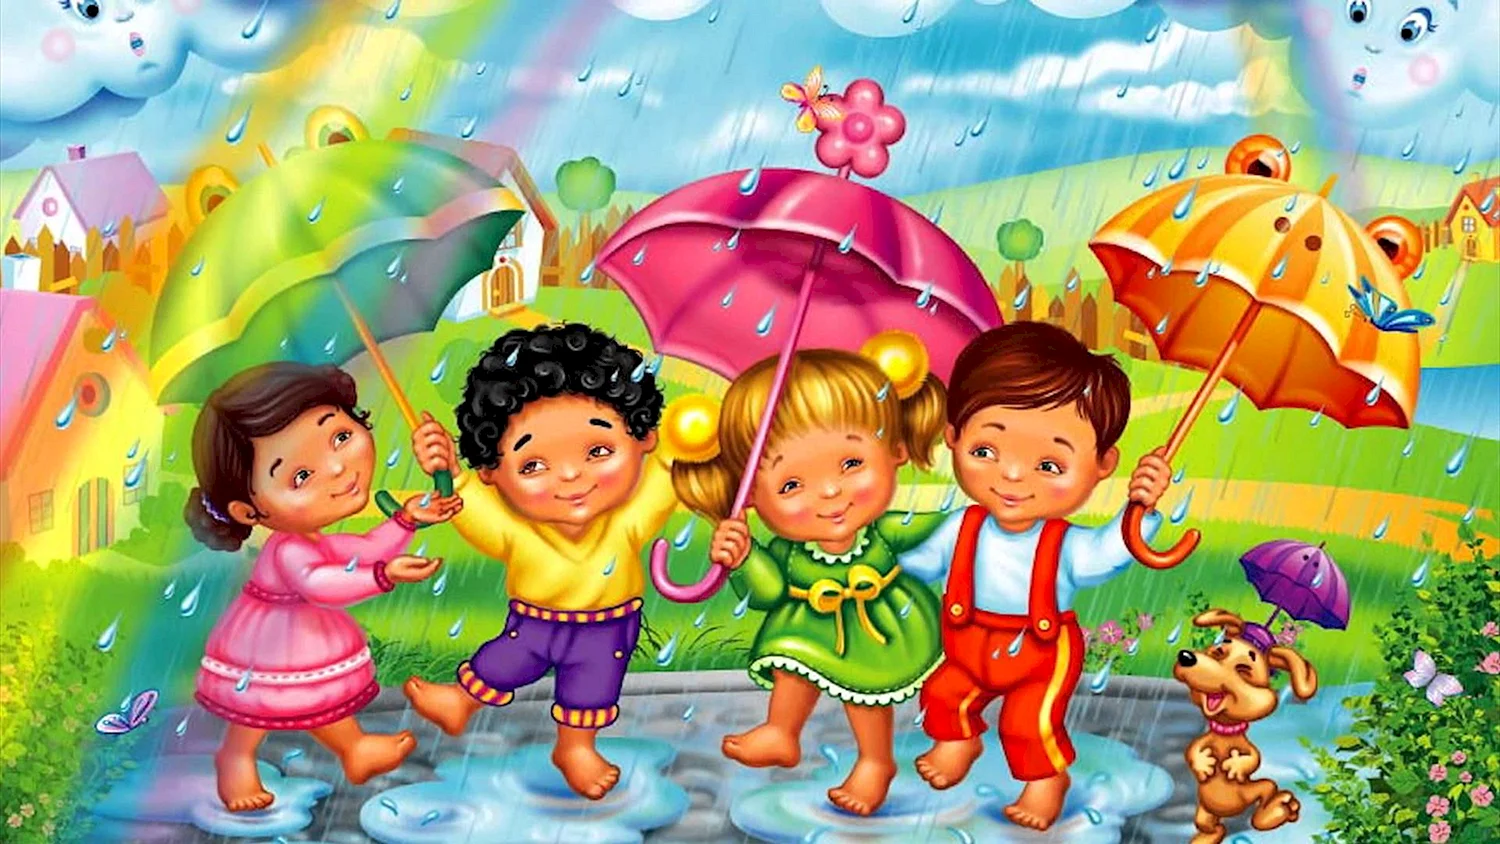 Лето иллюстрация для детей